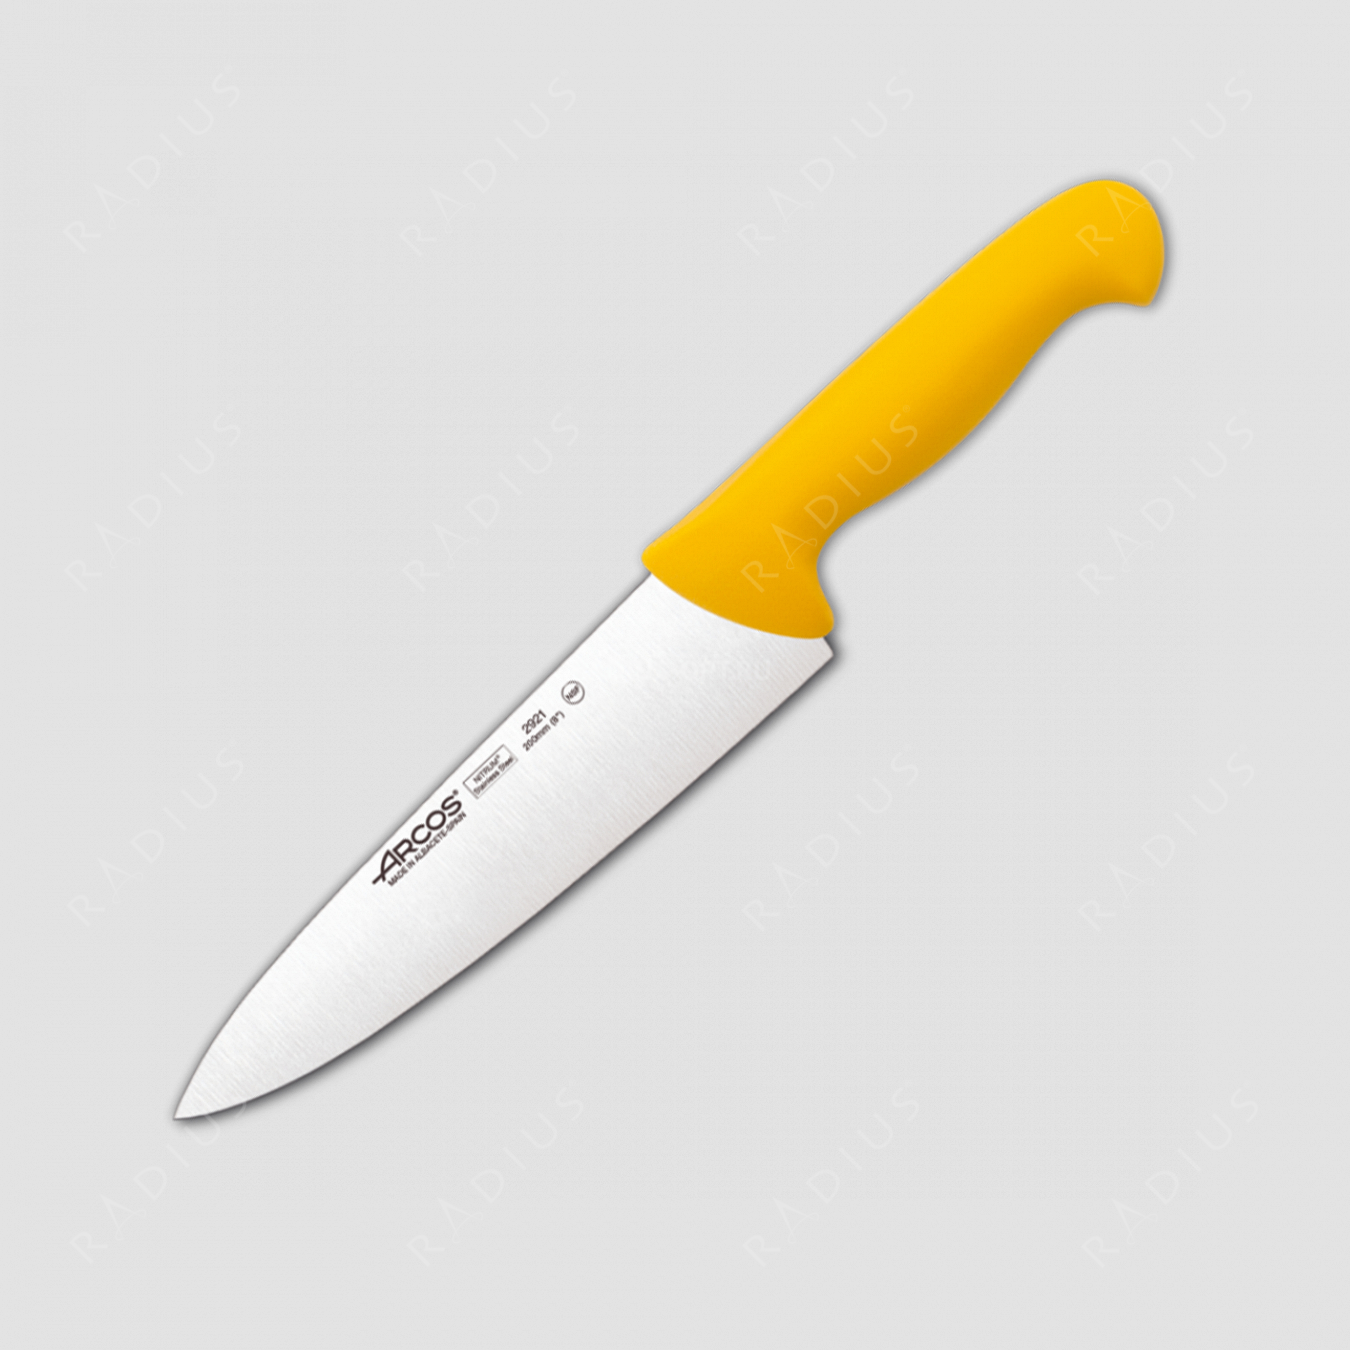 Профессиональный поварской кухонный нож 20 см, рукоять желтая, серия 2900, ARCOS, Испания